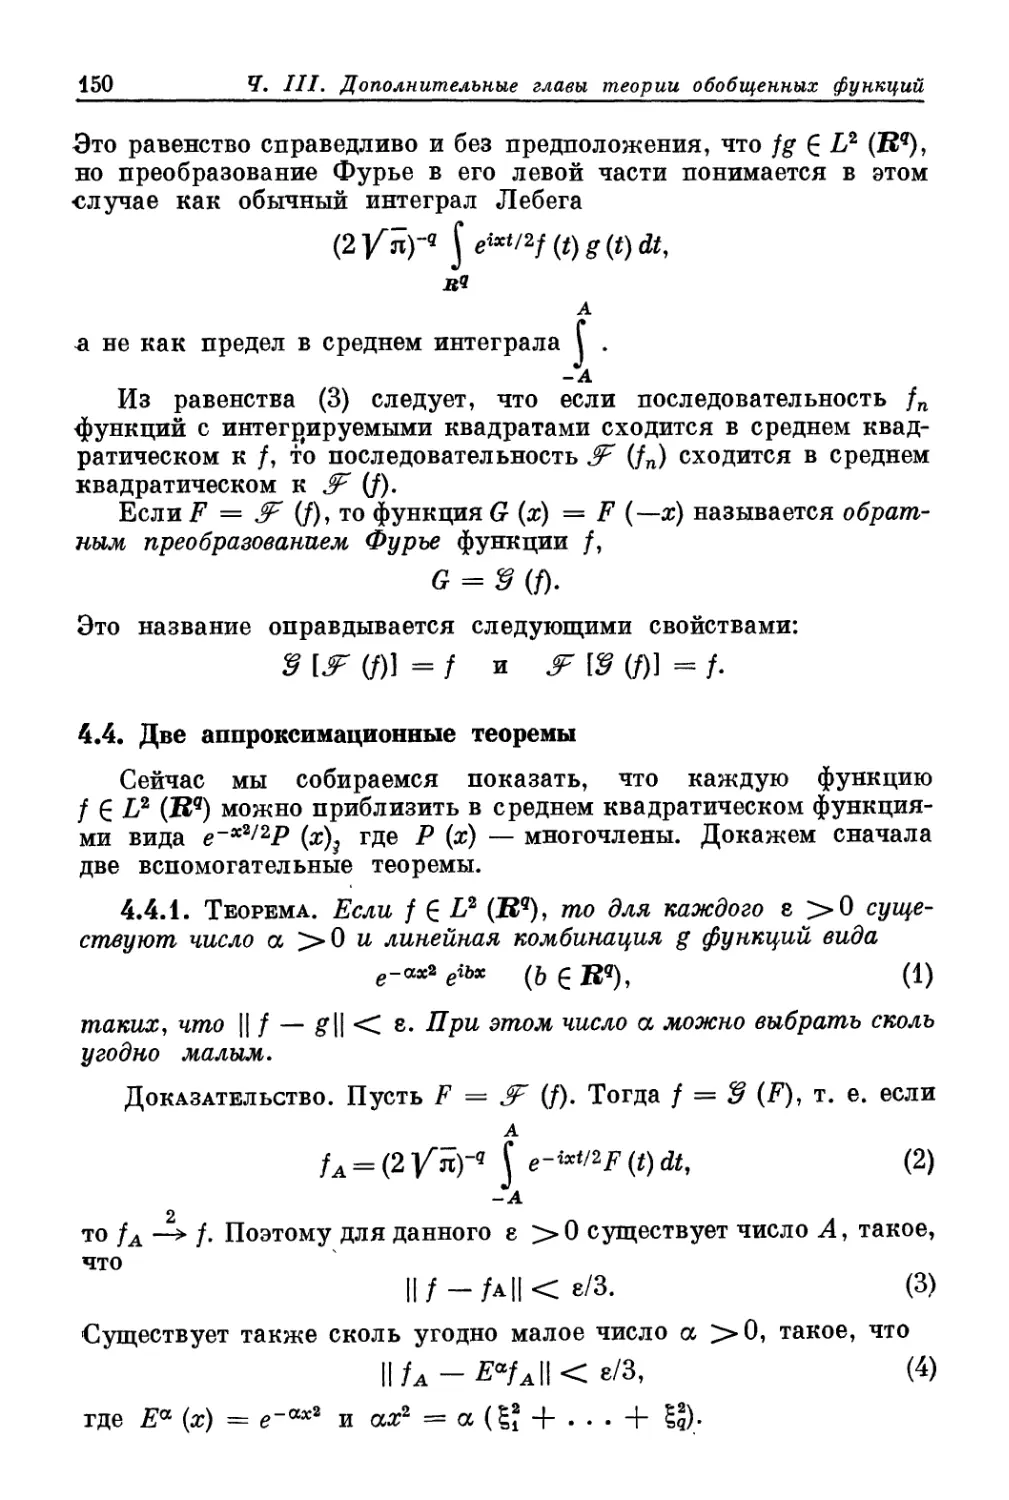 4.4. Две аппроксимационные теоремы